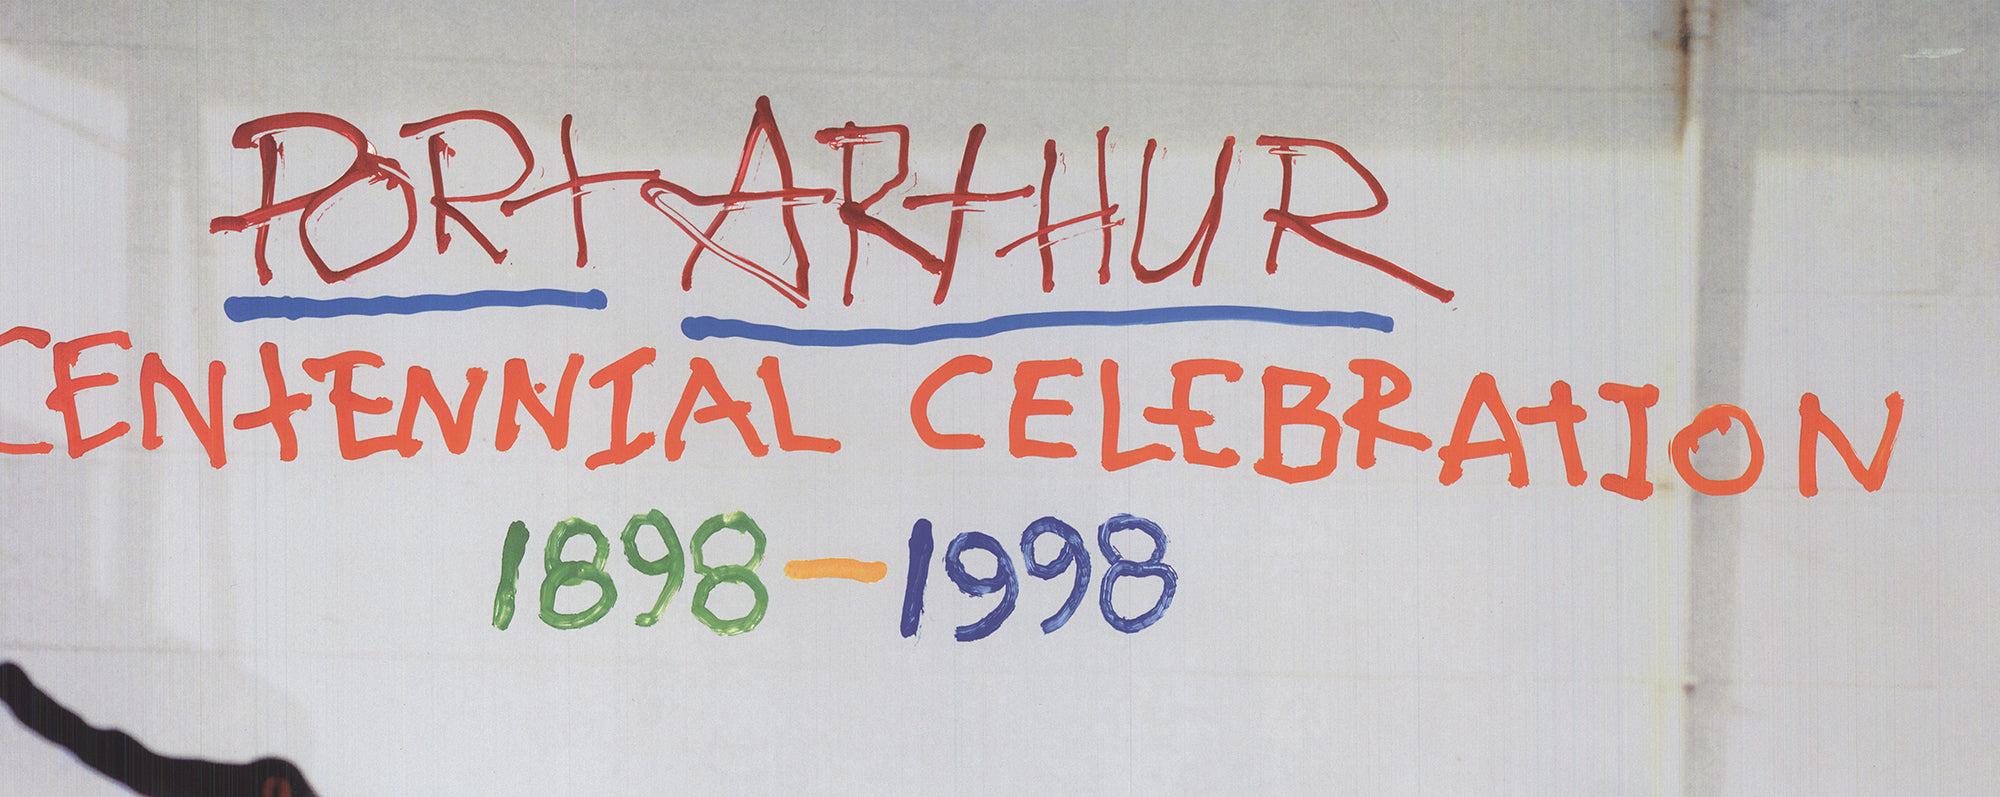 Robert Rauschenberg 'Centennial Celebration' 1998 ORIGINAL POSTER For Sale 3